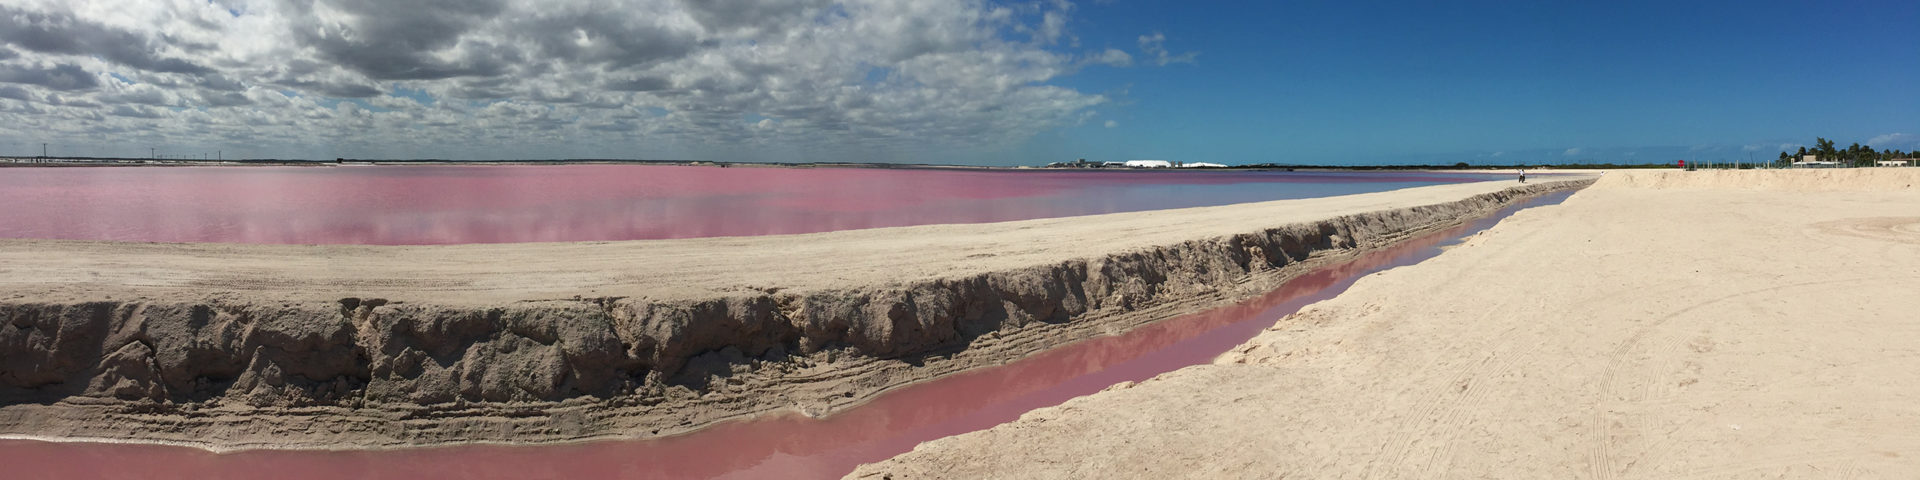 The pink Lake, Las Colorades, Yucatán